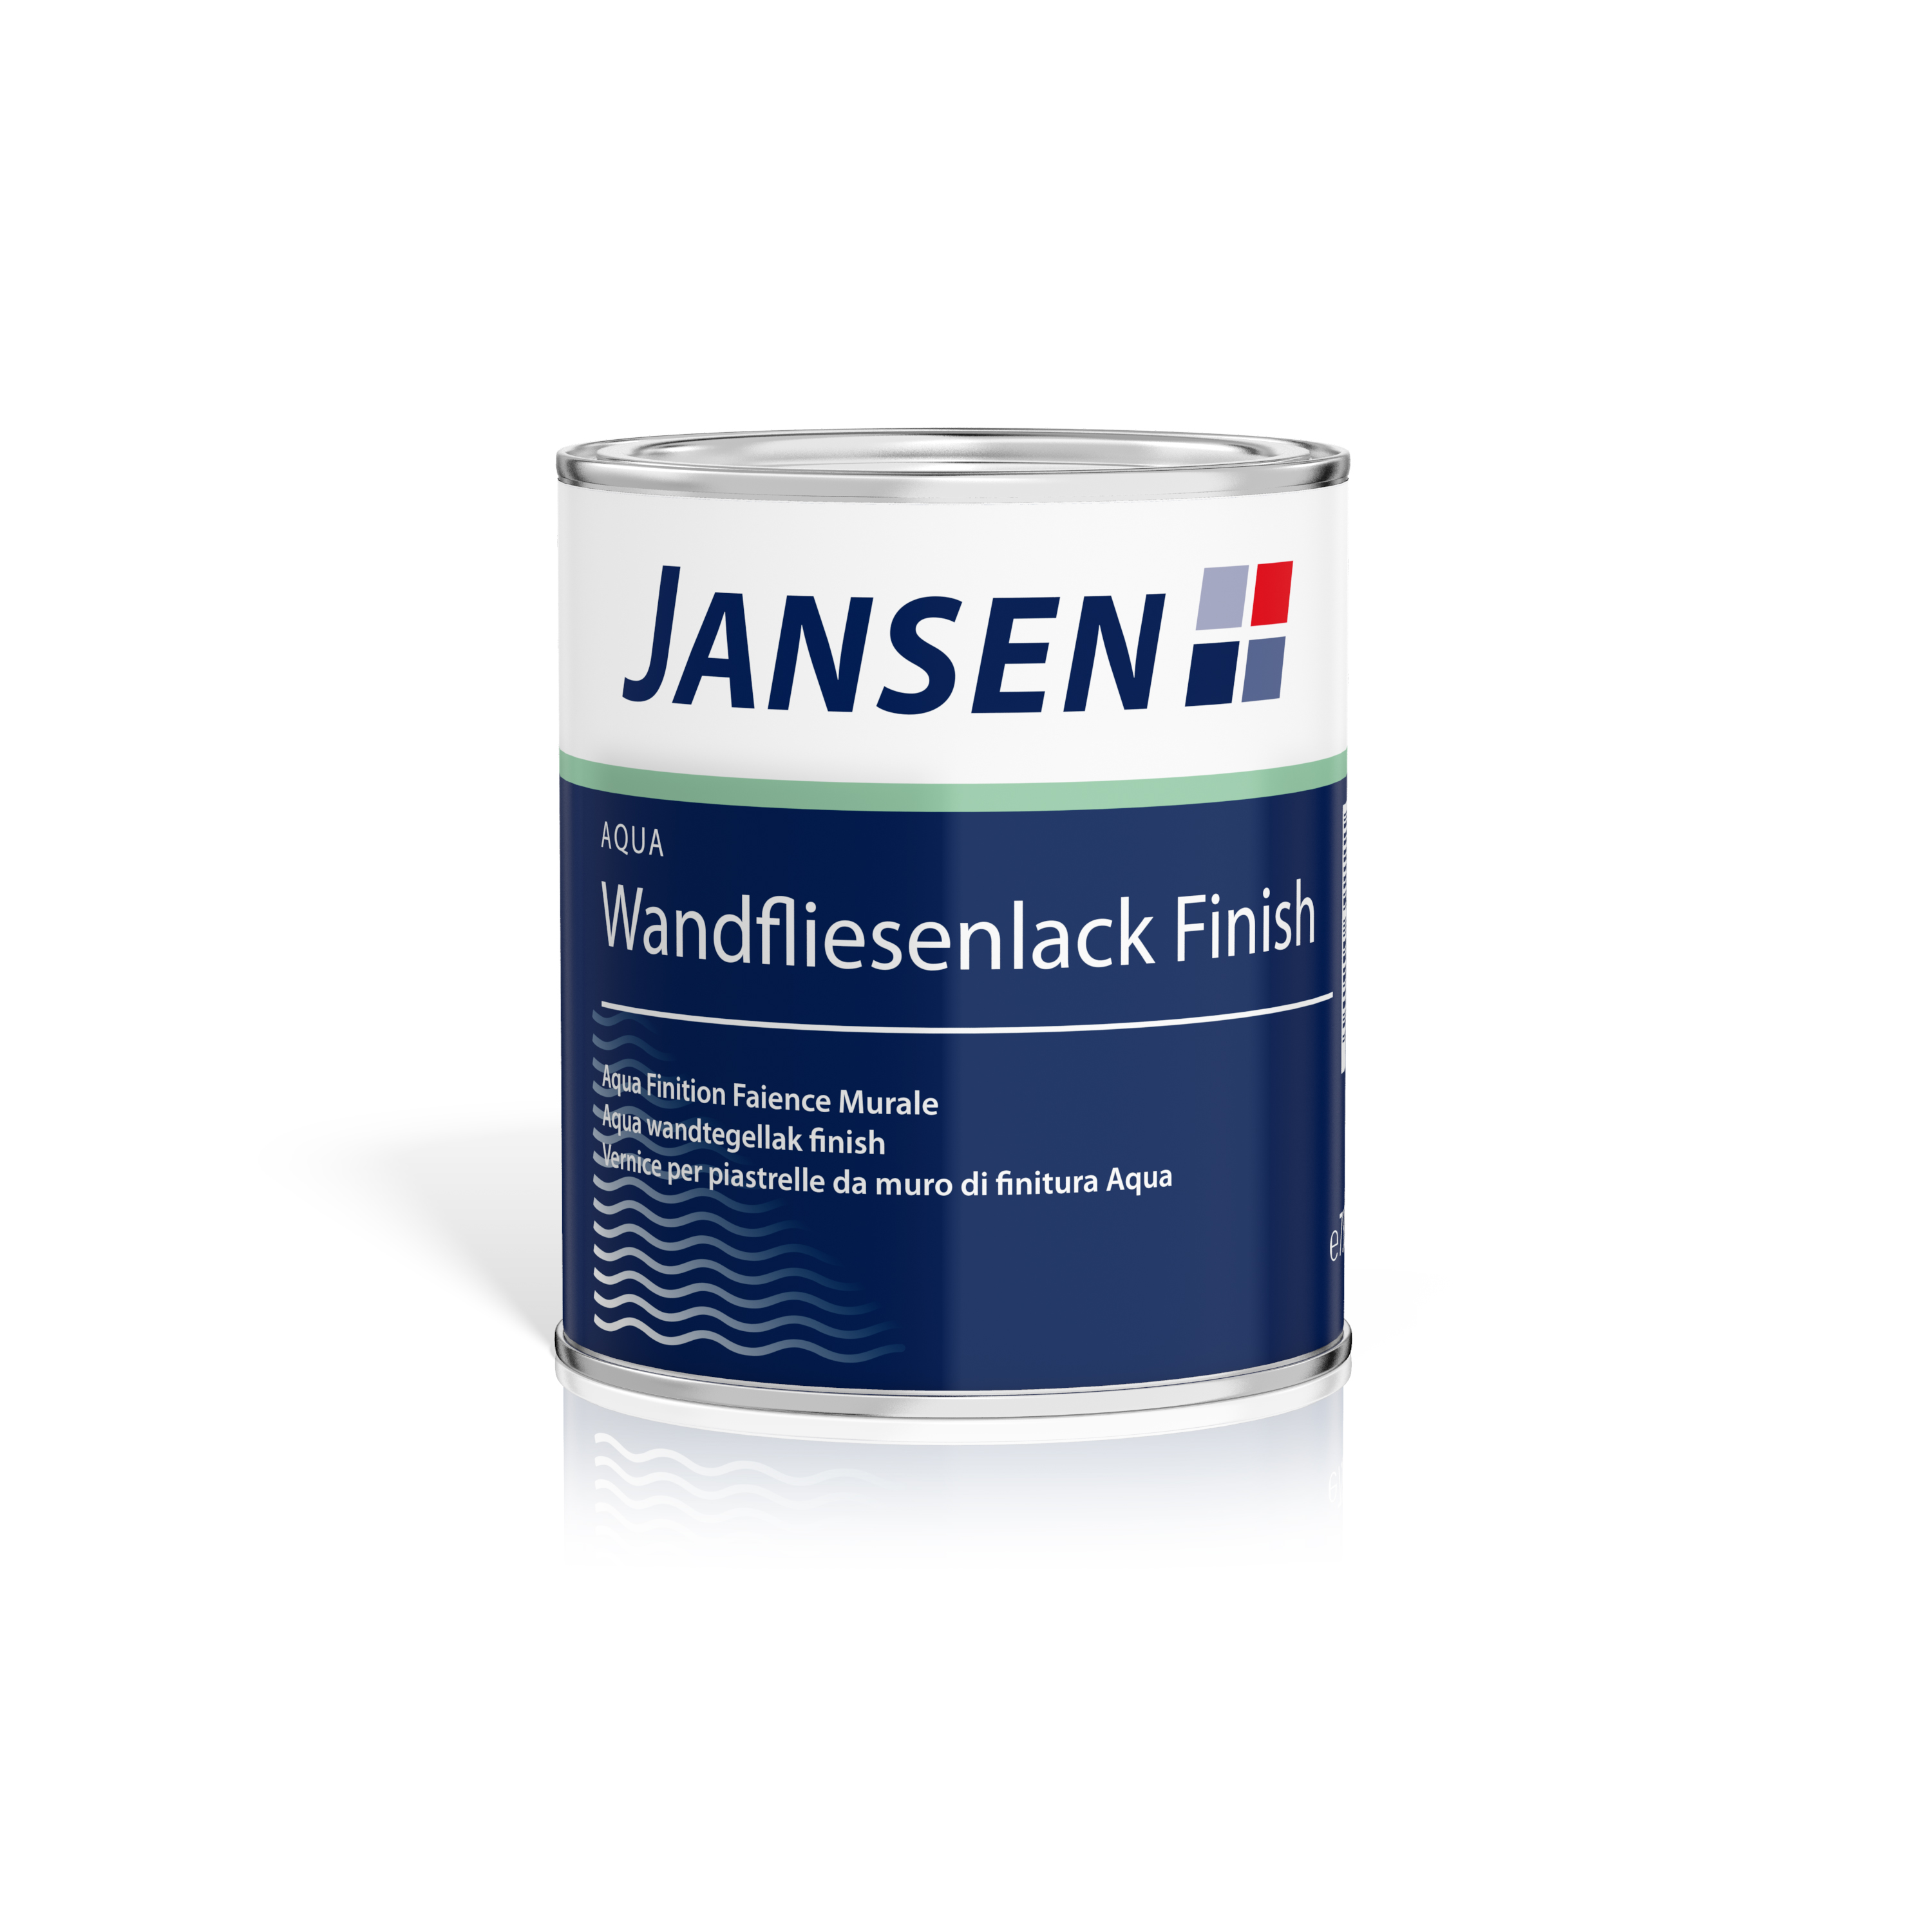 Jansen Aqua Wandfliesenlack Finish 750ml